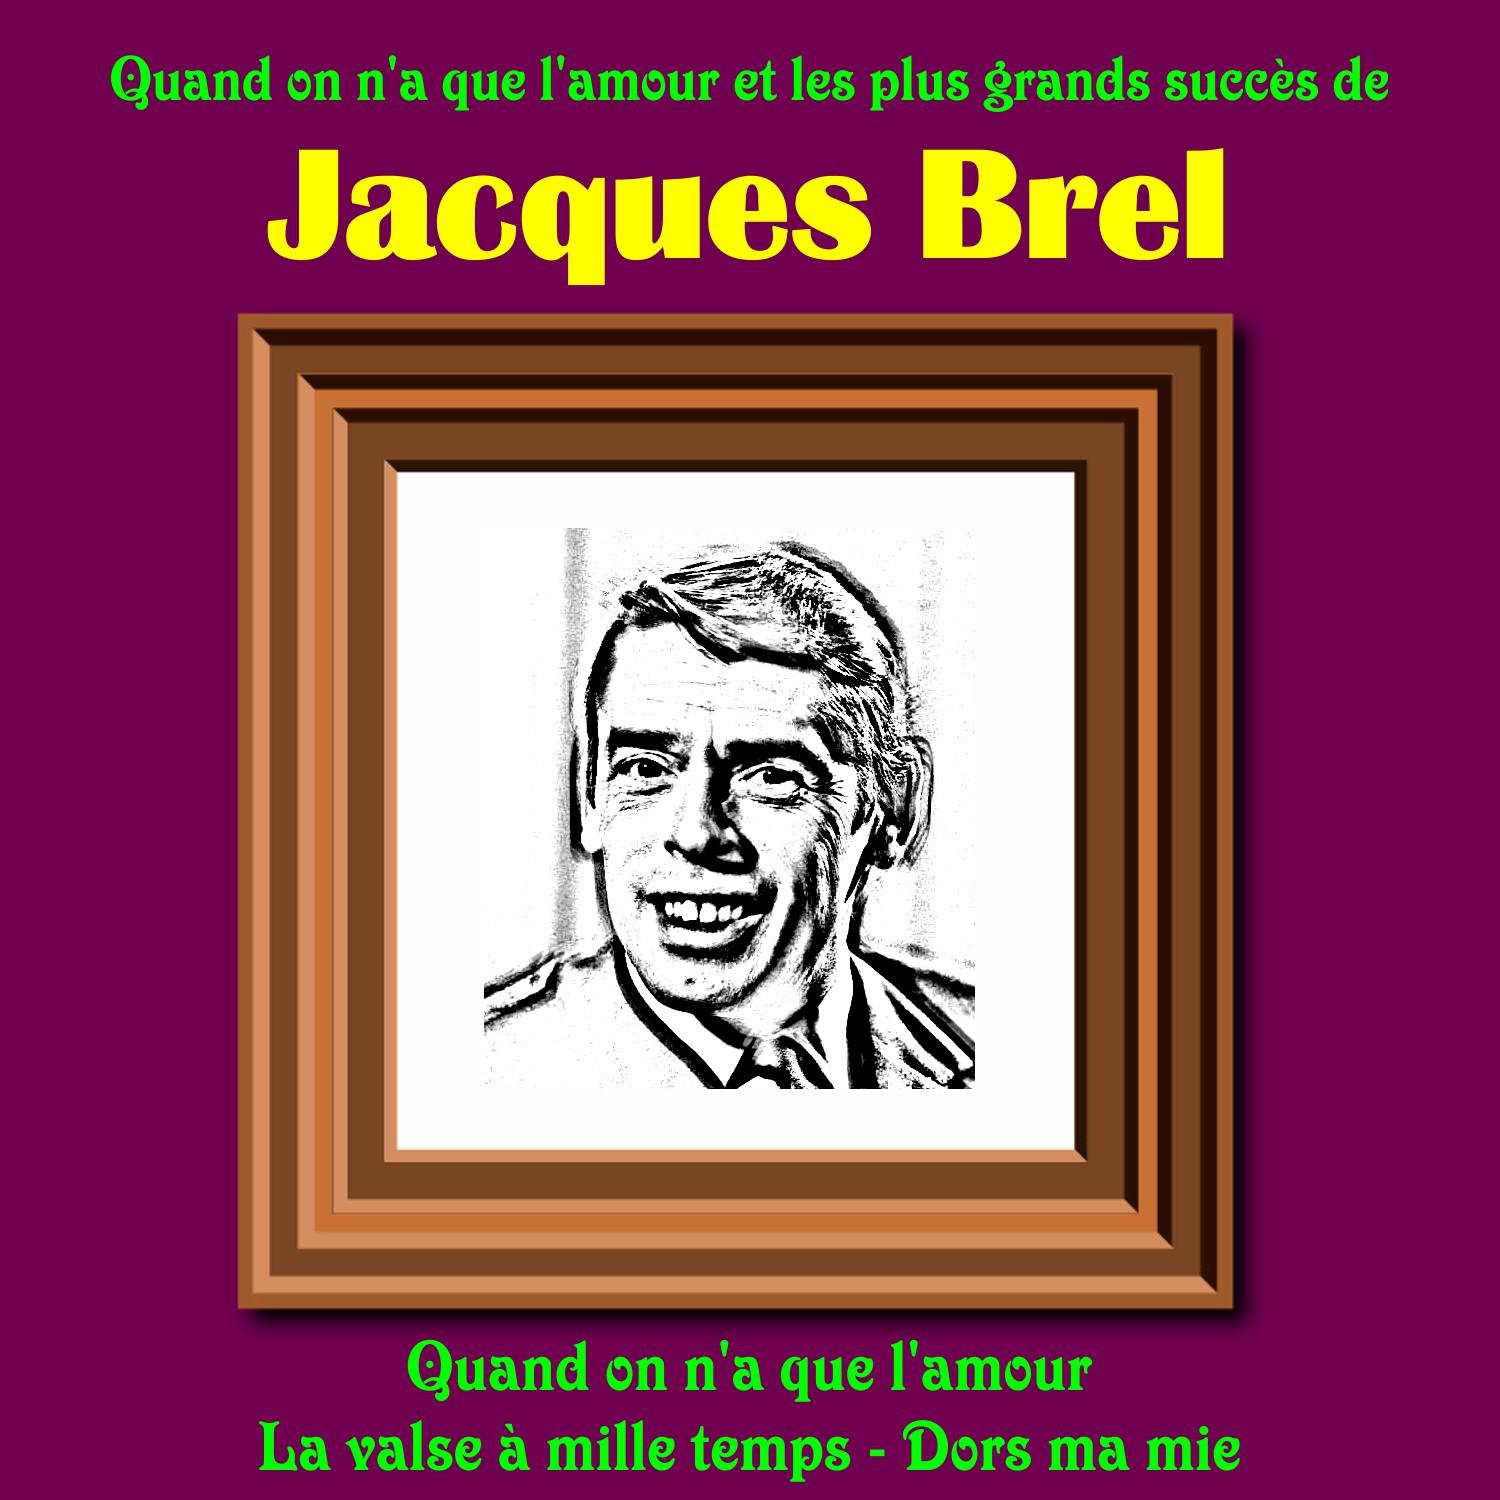 Quand on n'a que l'amour et les plus grands succes de Jacques Brel